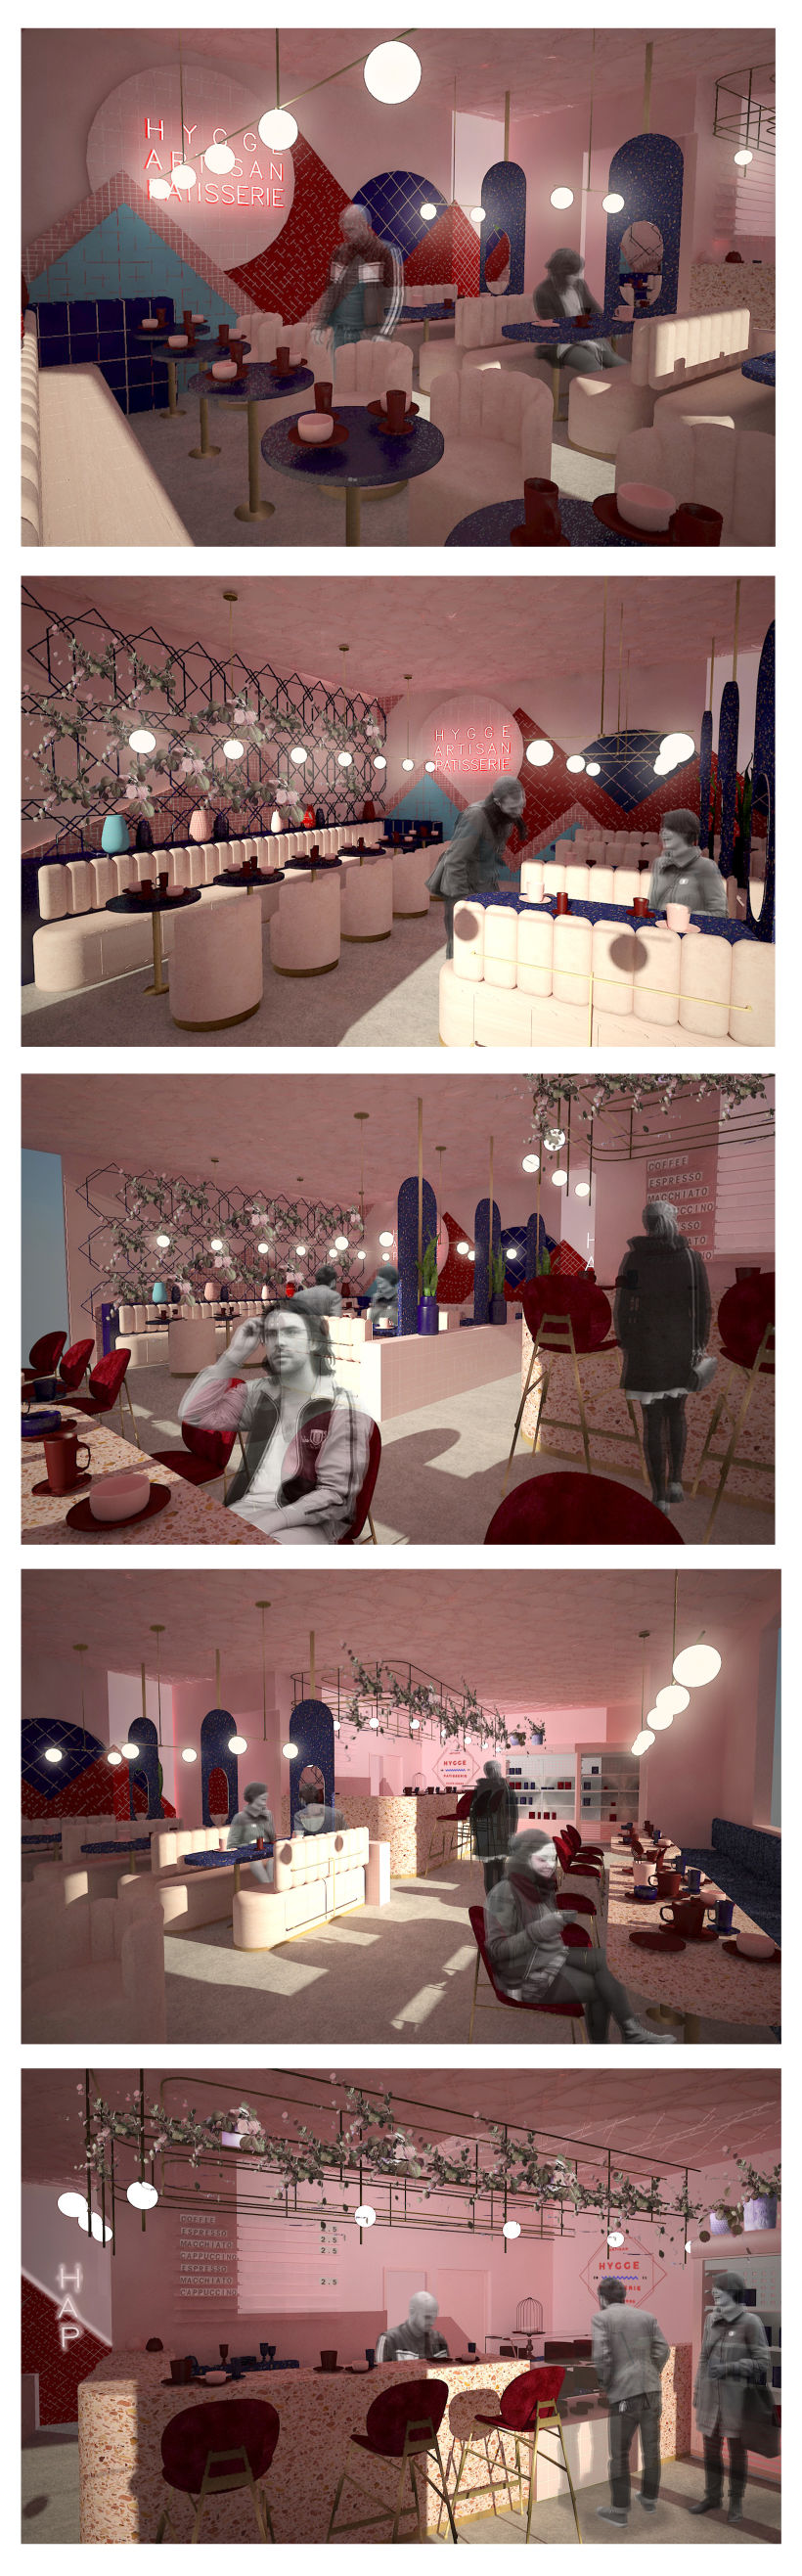 Mi Proyecto del curso: Diseño de interiores para restaurantes 0